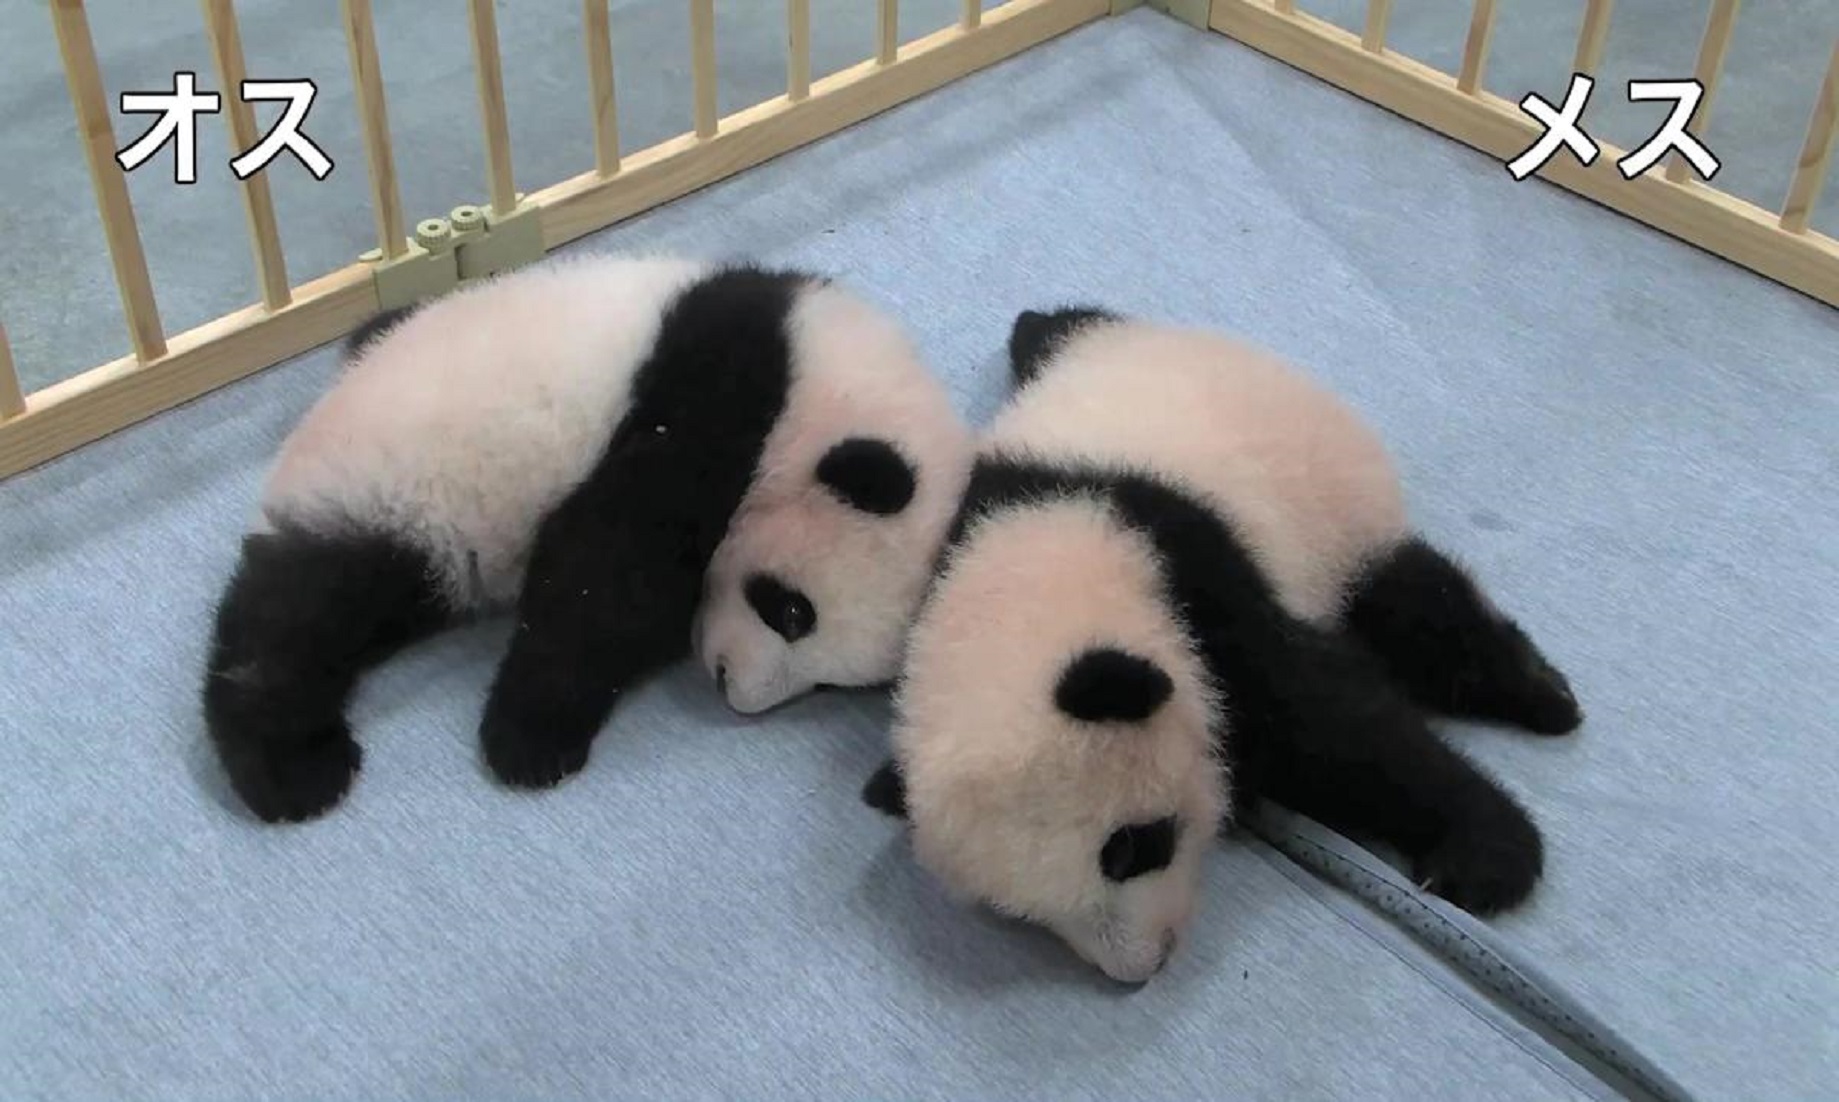 Twin Pandas Born In Tokyo Zoo Named Xiao Xiao, Lei Lei